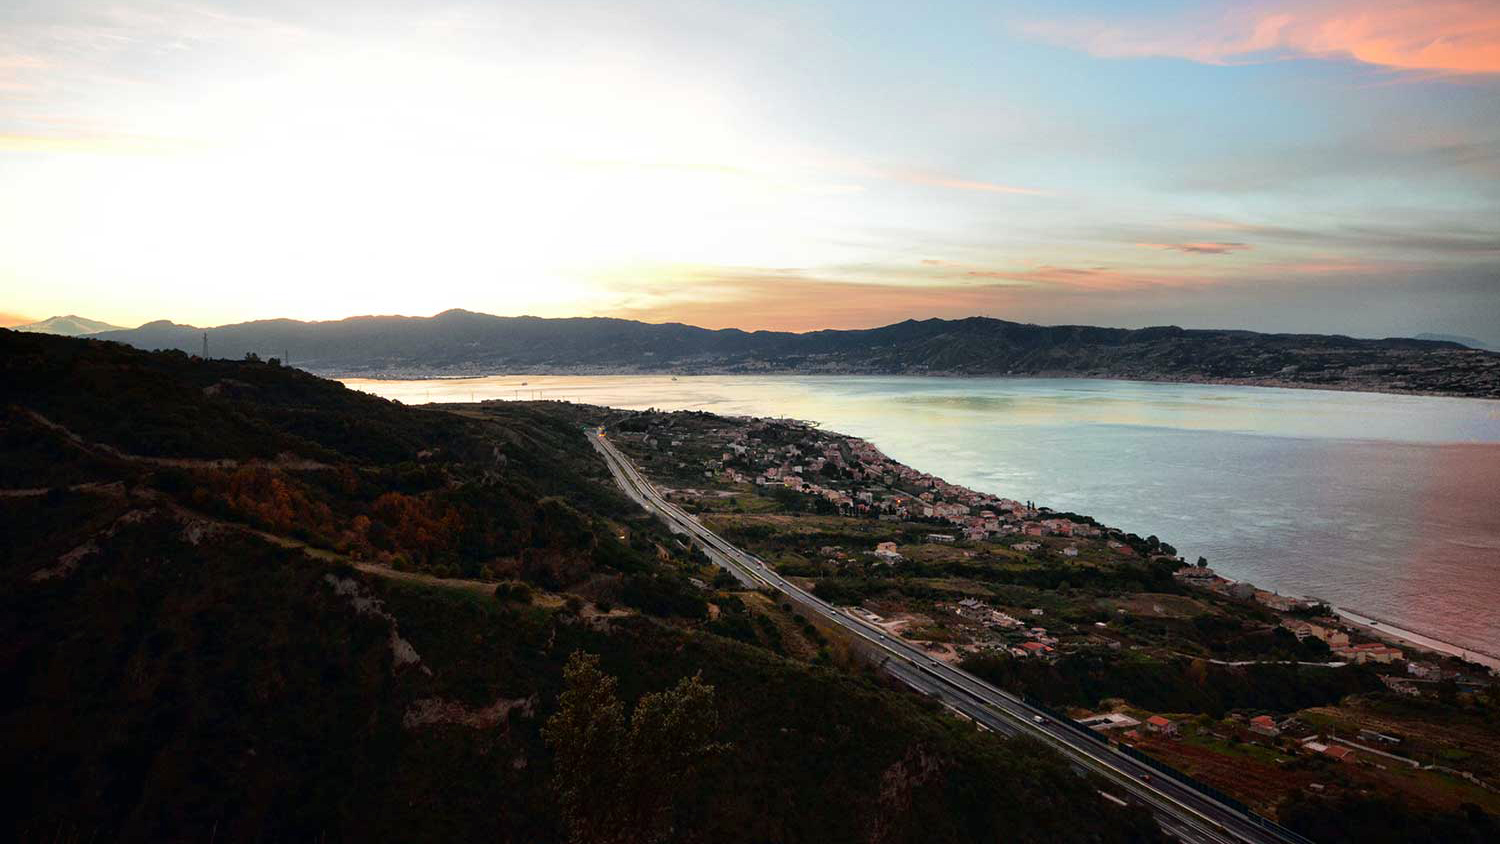 Panoramica dello Stretto di Messina (dal sito www.atuostradadelmediterraneo.it)